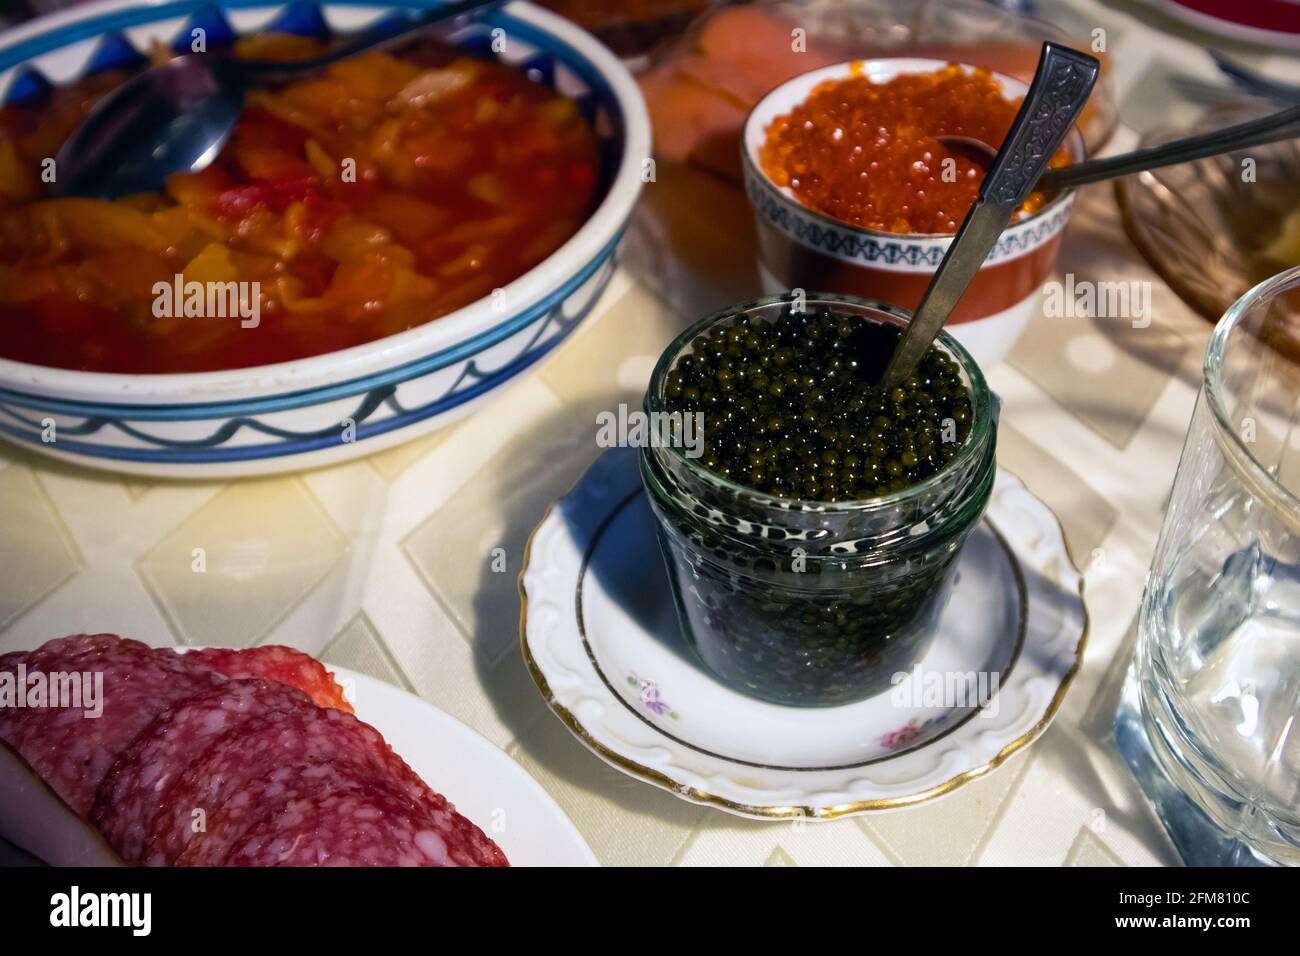 Hogar festivo servido mesa con caviar rojo y negro y. otros aperitivos diferentes Foto de stock